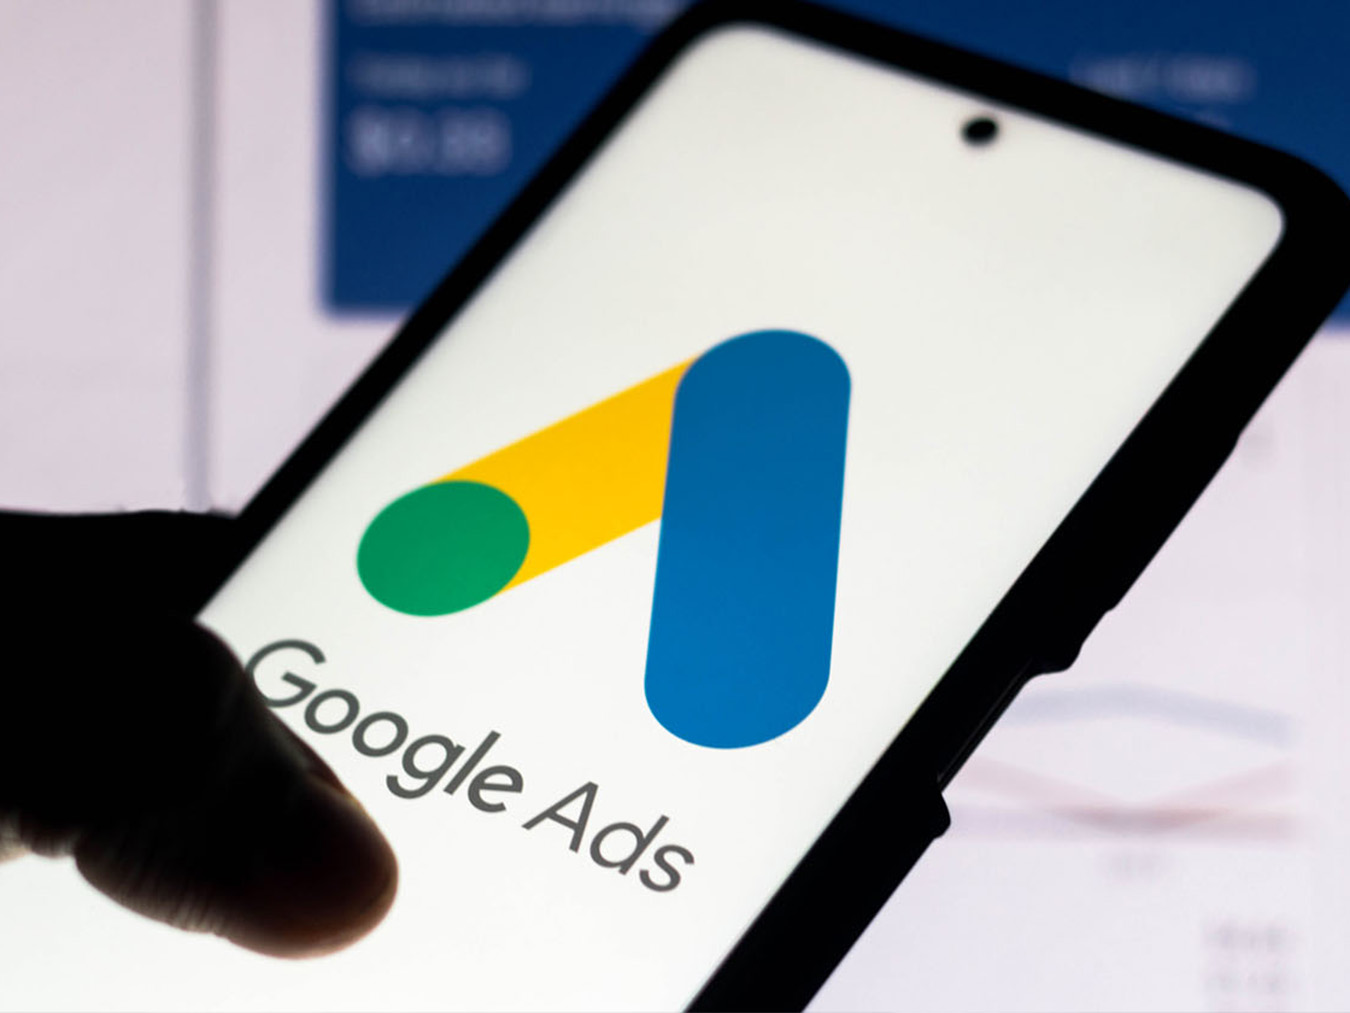 Dịch vụ quảng cáo Google Ads